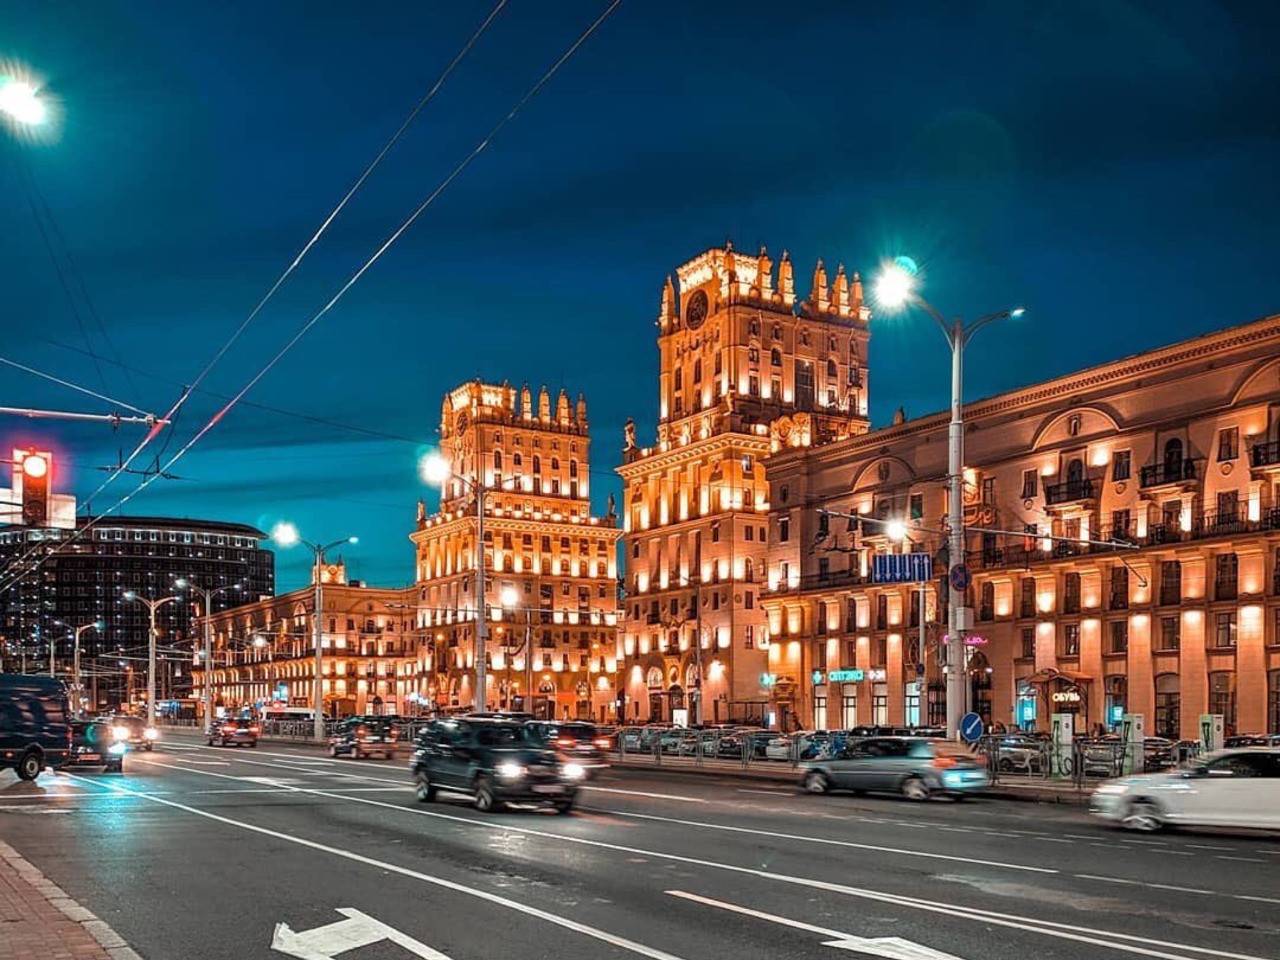 Минск — богатая история и современность | Цена 125€, отзывы, описание экскурсии